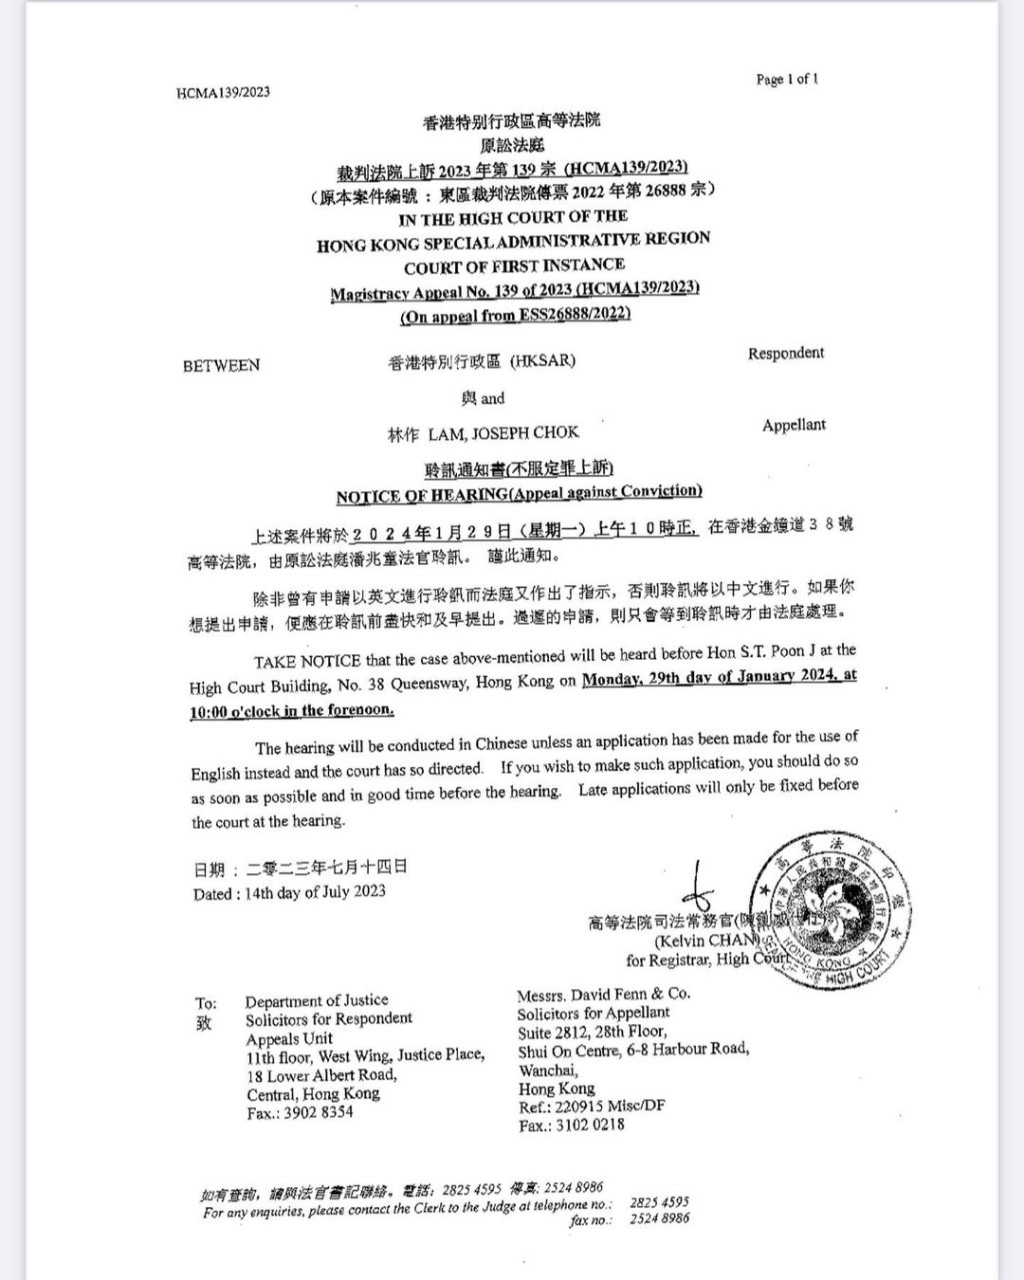 林作今日在IG表示上诉至高等法院。